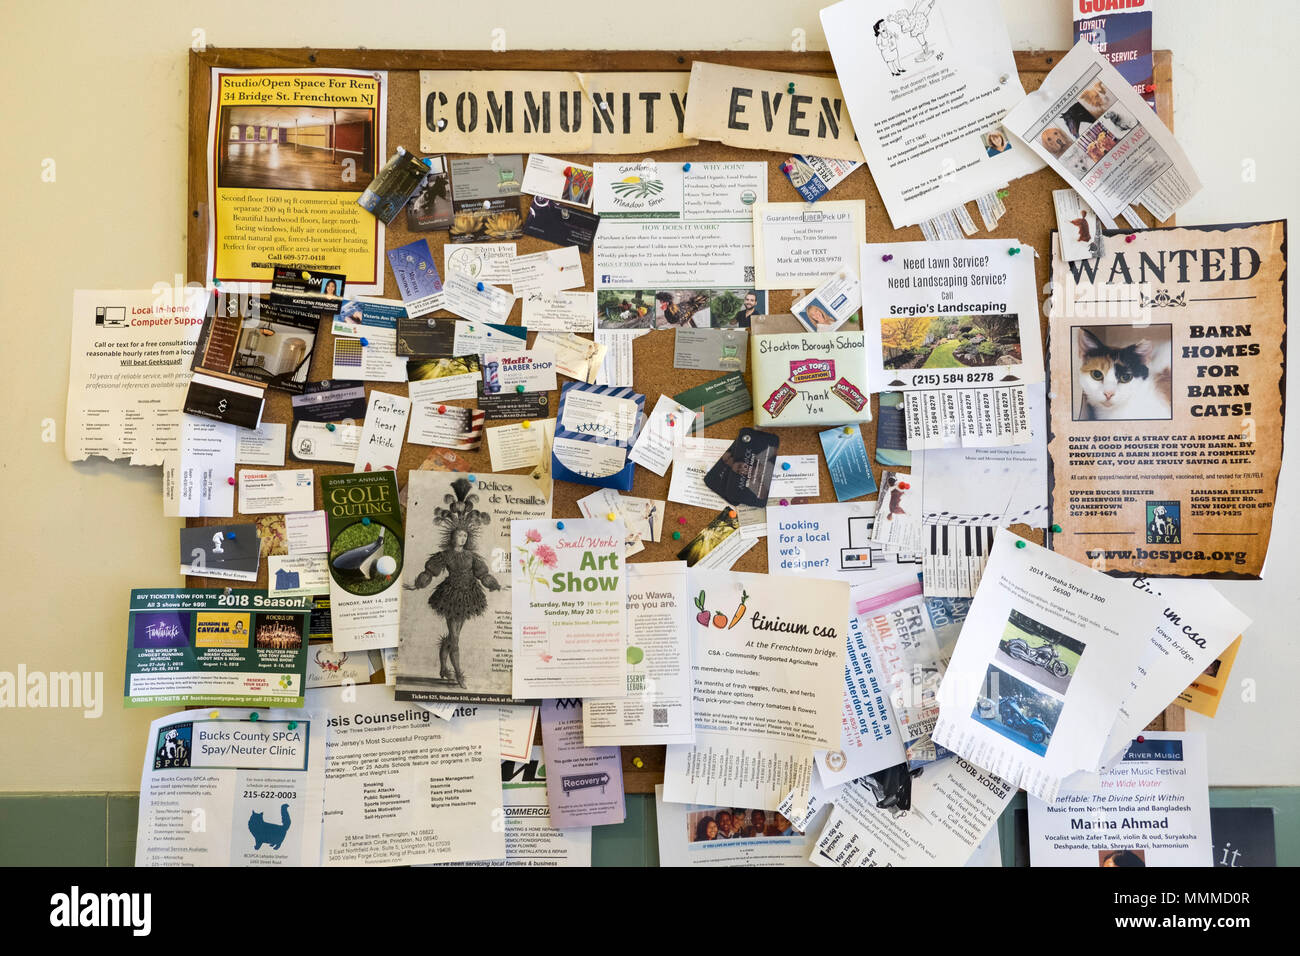 Tablón de anuncios de la comunidad en una ciudad pequeña oficina de correos, Stockton, Nueva Jersey, EE.UU. Foto de stock